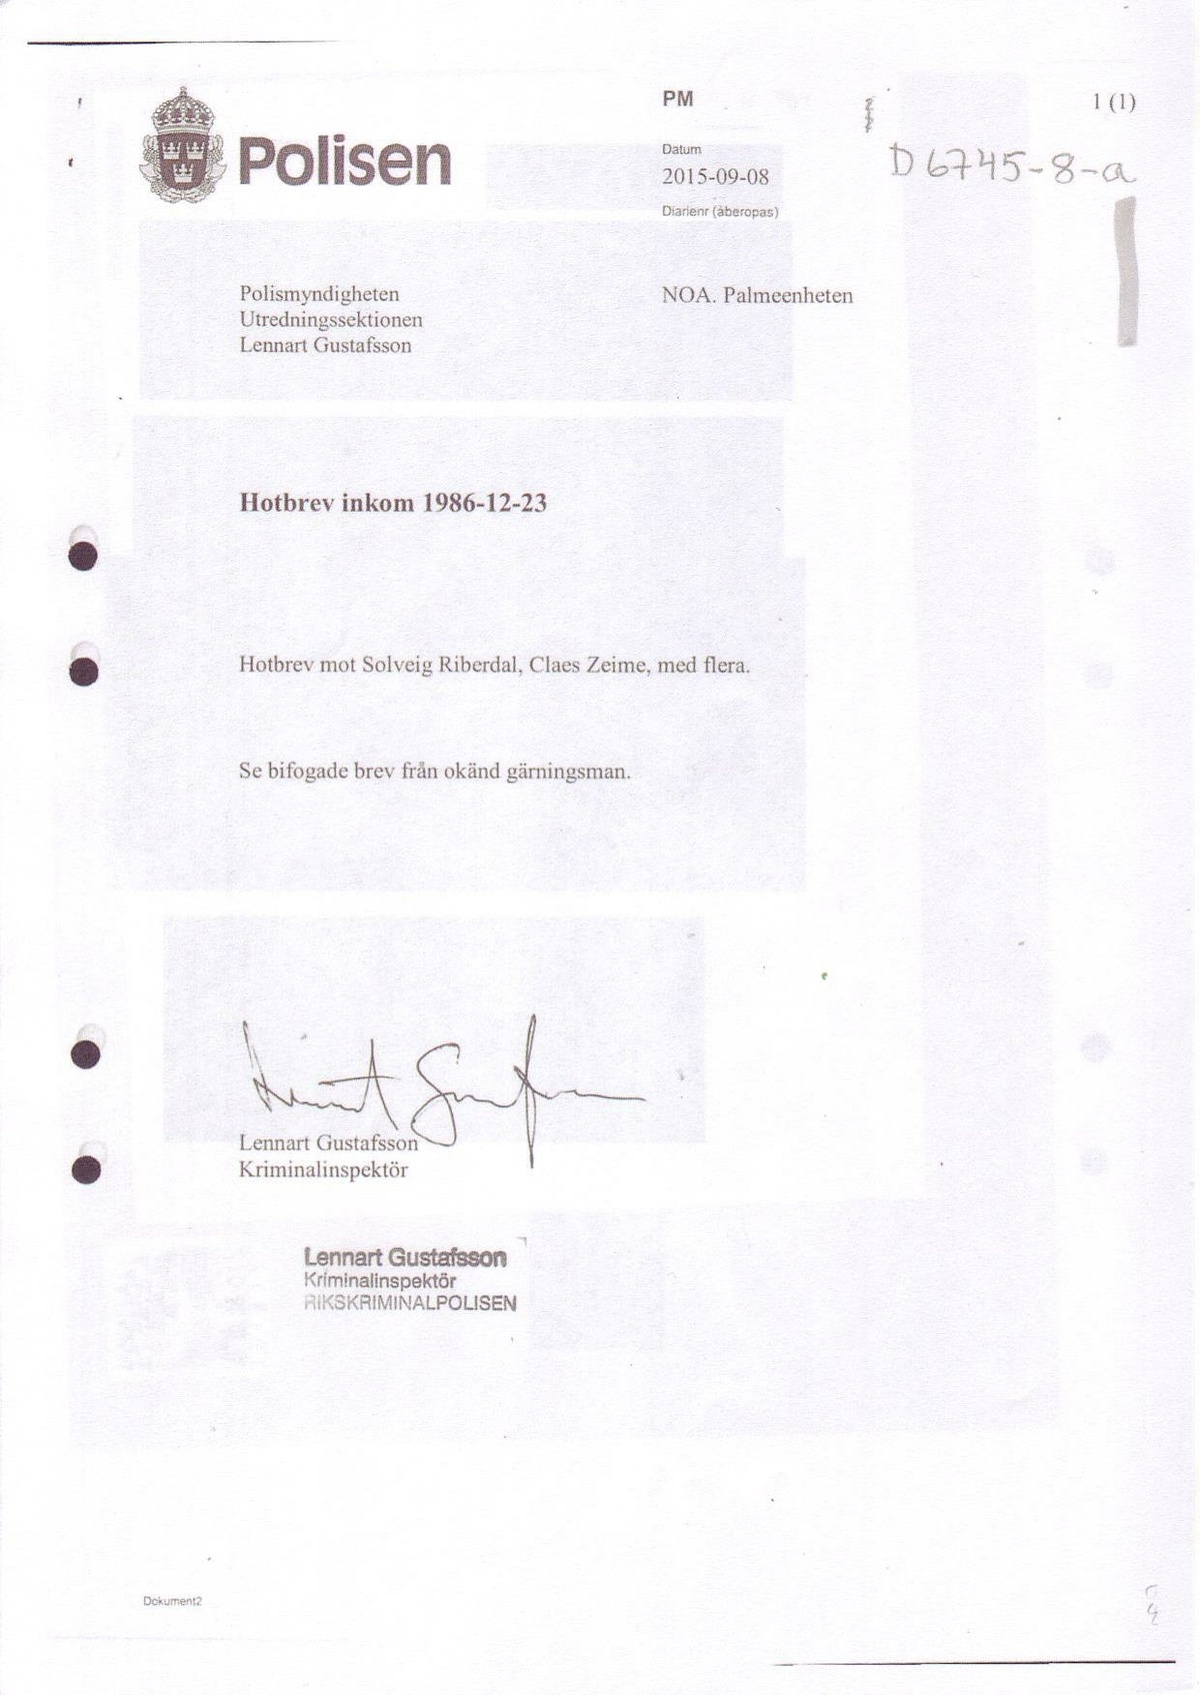 Pol-2015-09-08 D6745-08-A Hotbrev från Folkets Domstol från 1986.pdf